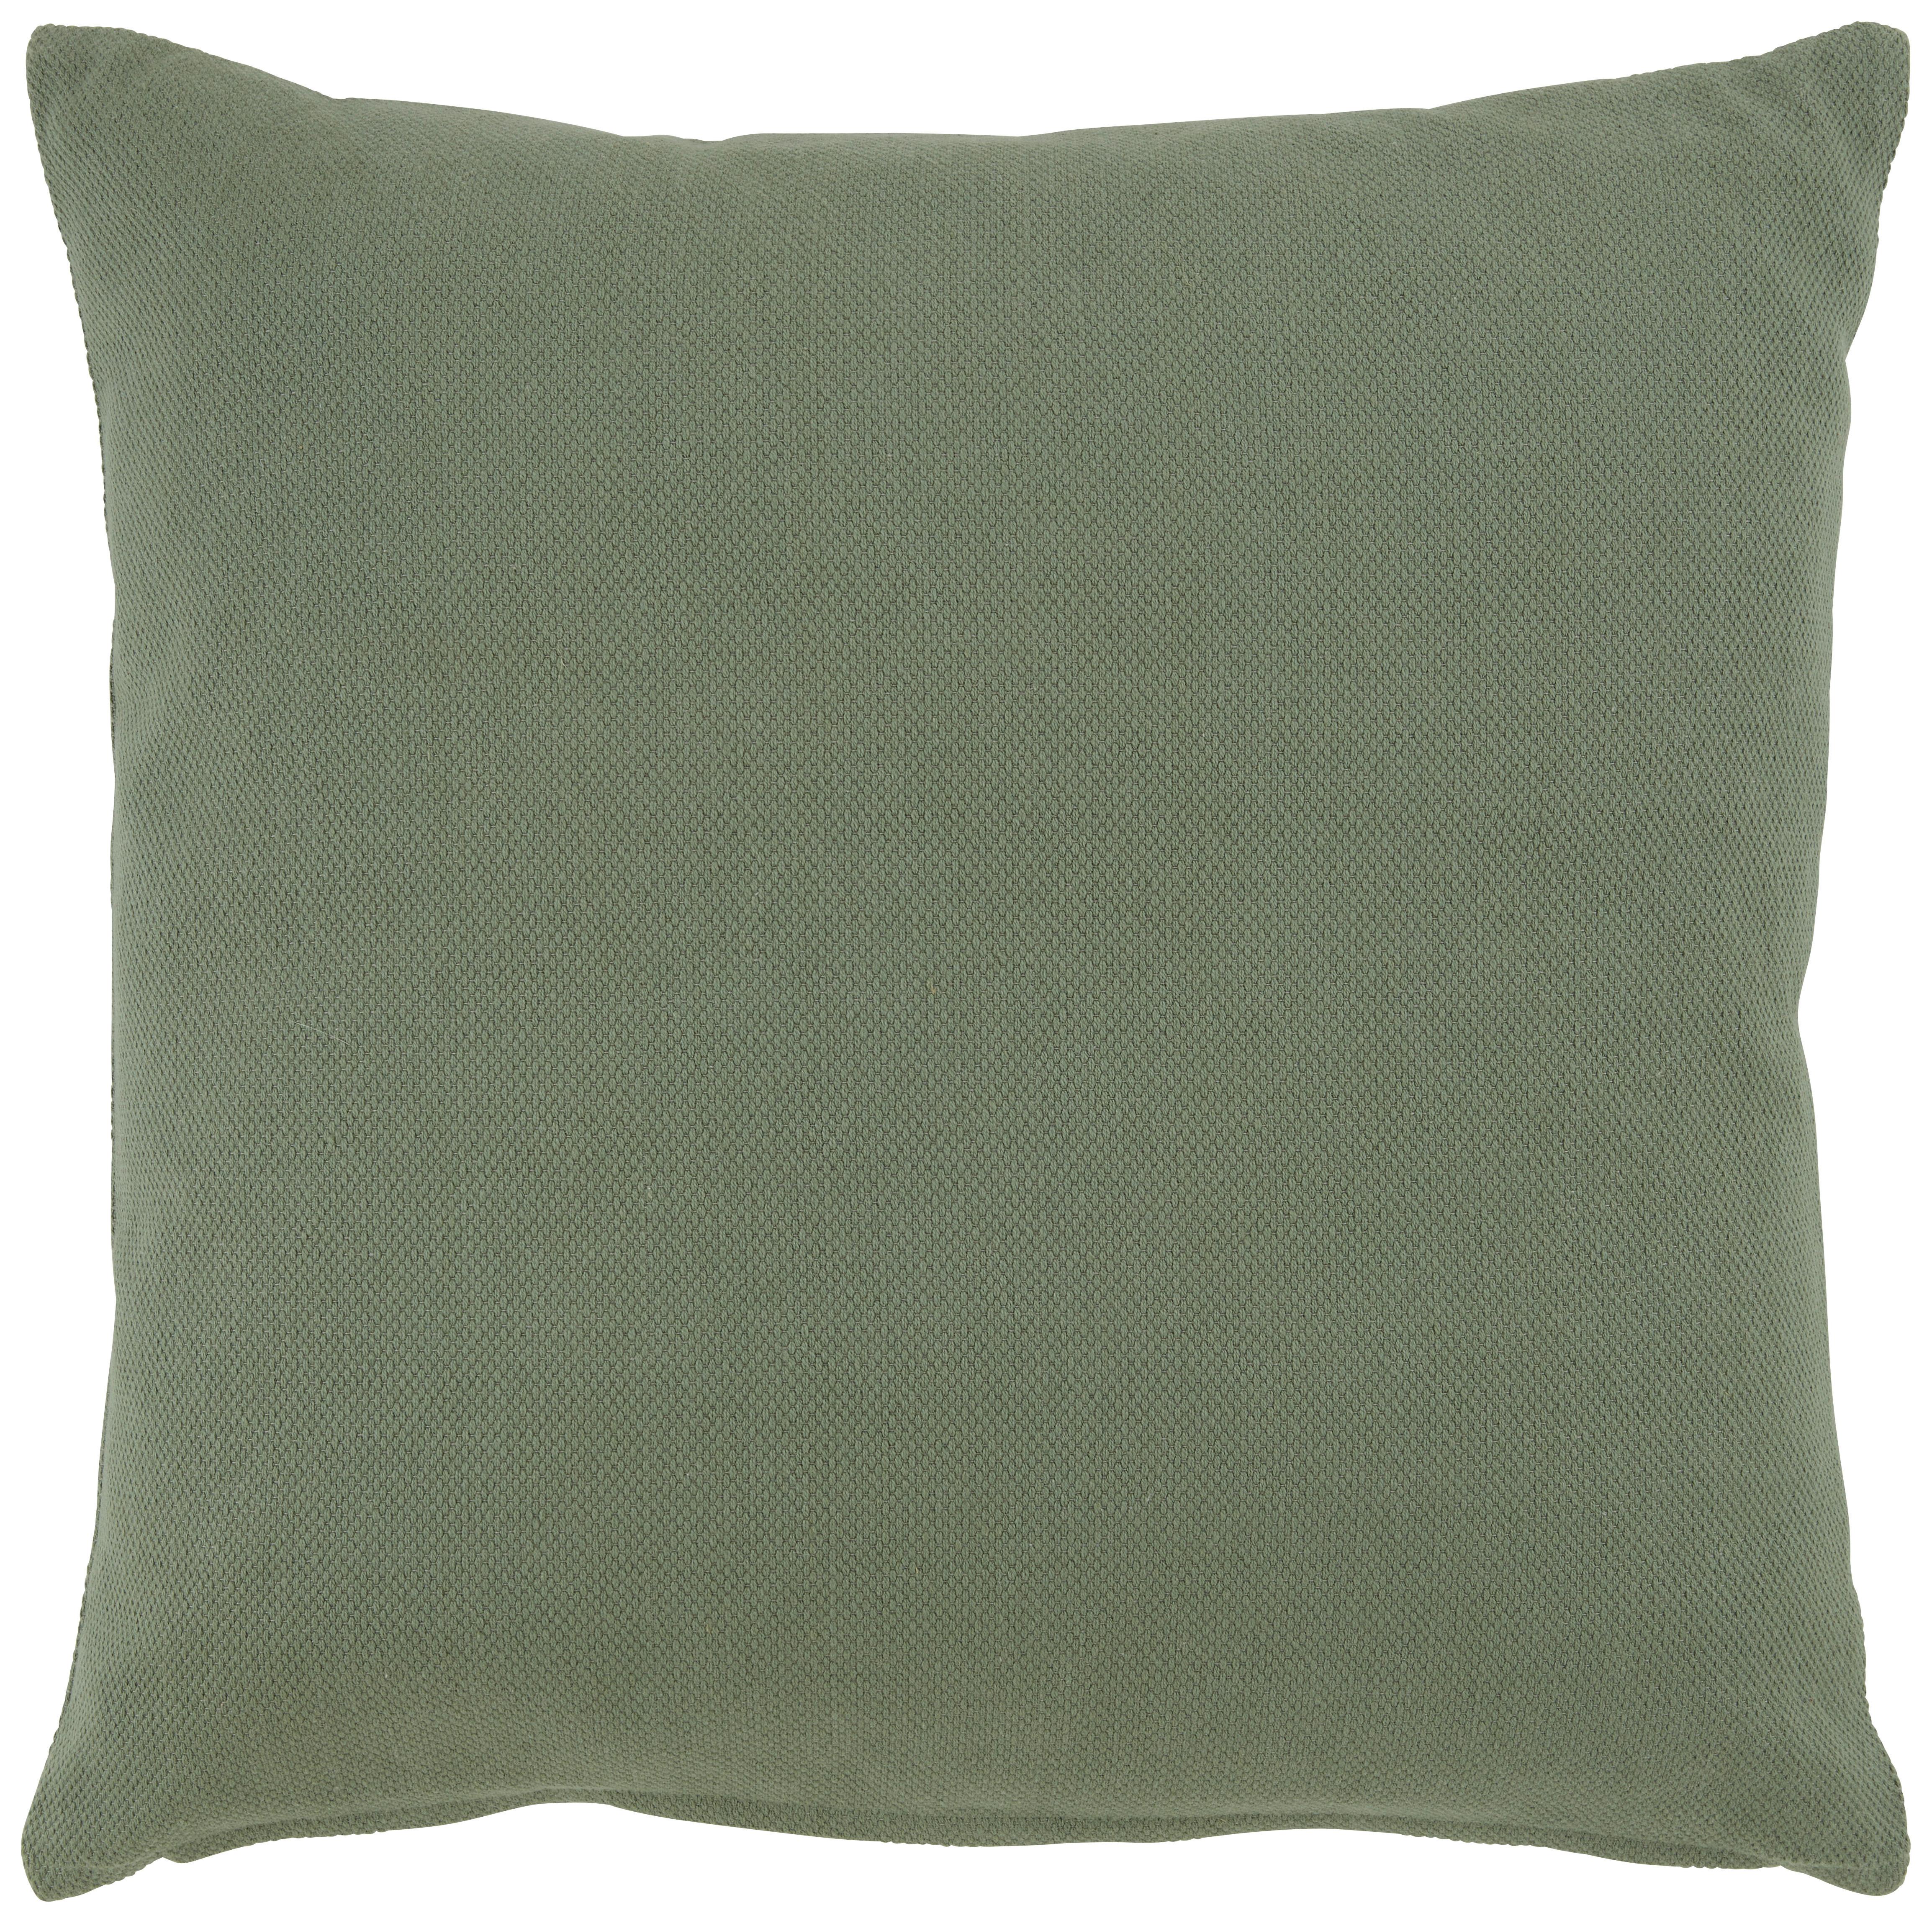 Dekorační Polštář Chris, 50/50cm, Zelená - tmavě zelená, Moderní, textil (50/50cm) - Premium Living